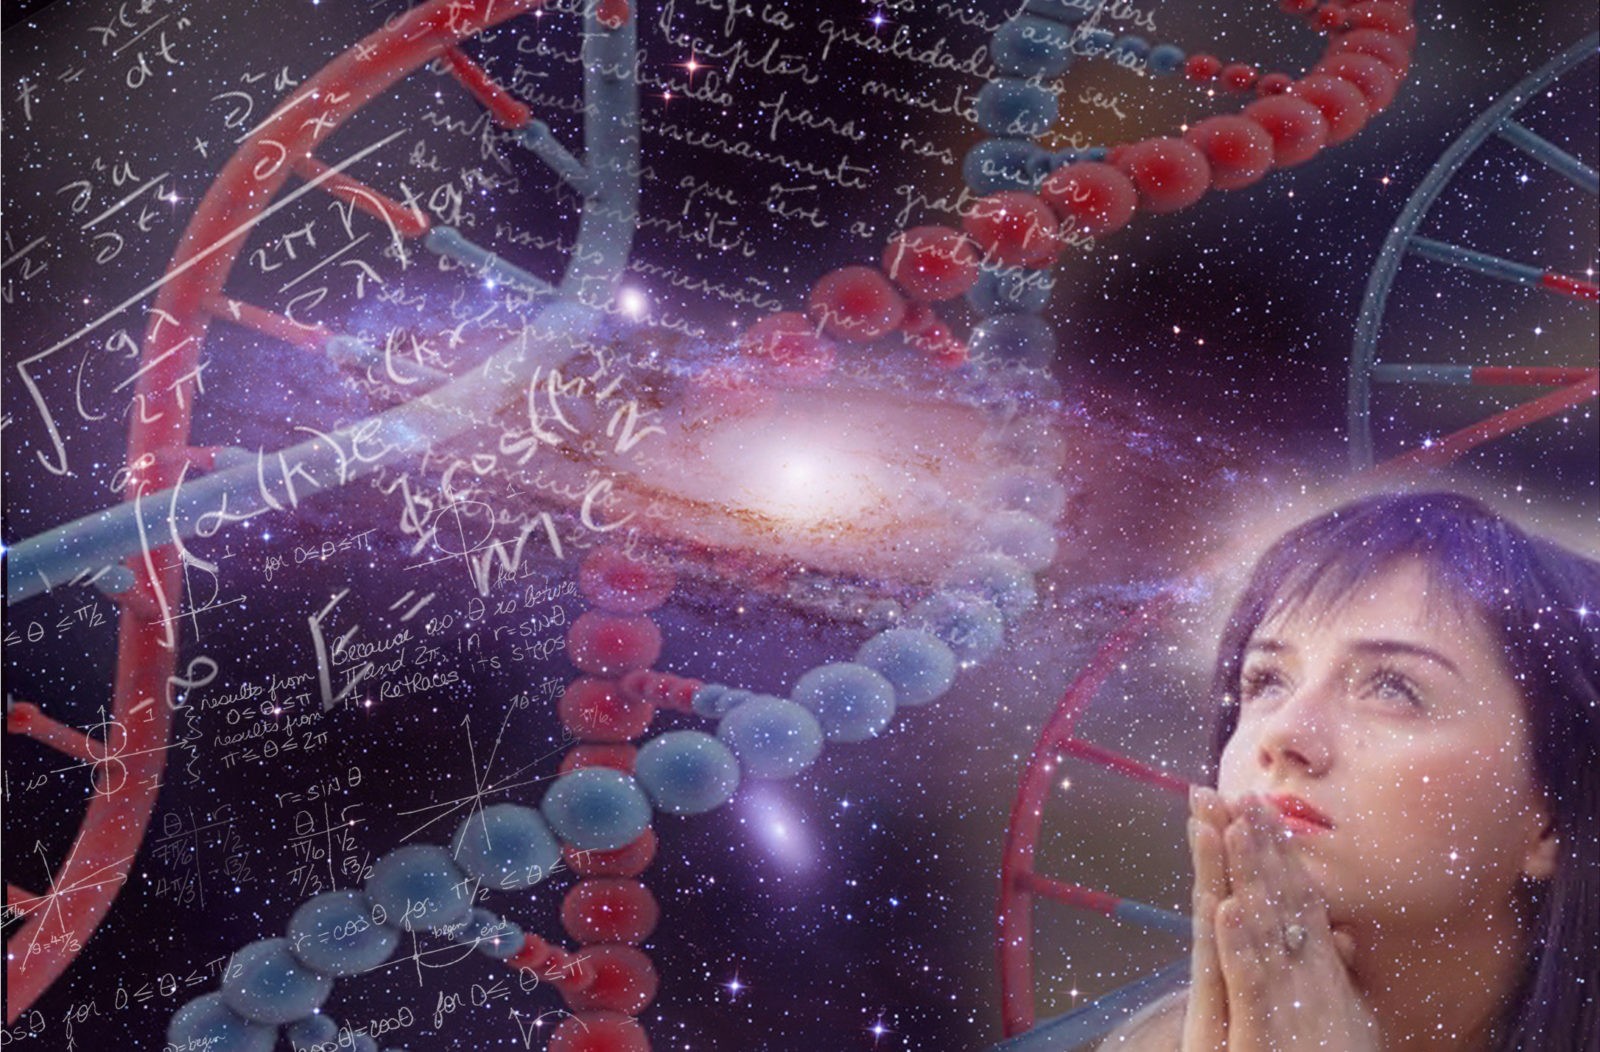 La Reencarnación Existe: La Conciencia queda contenida en el Universo tras la muerte, según Científicos